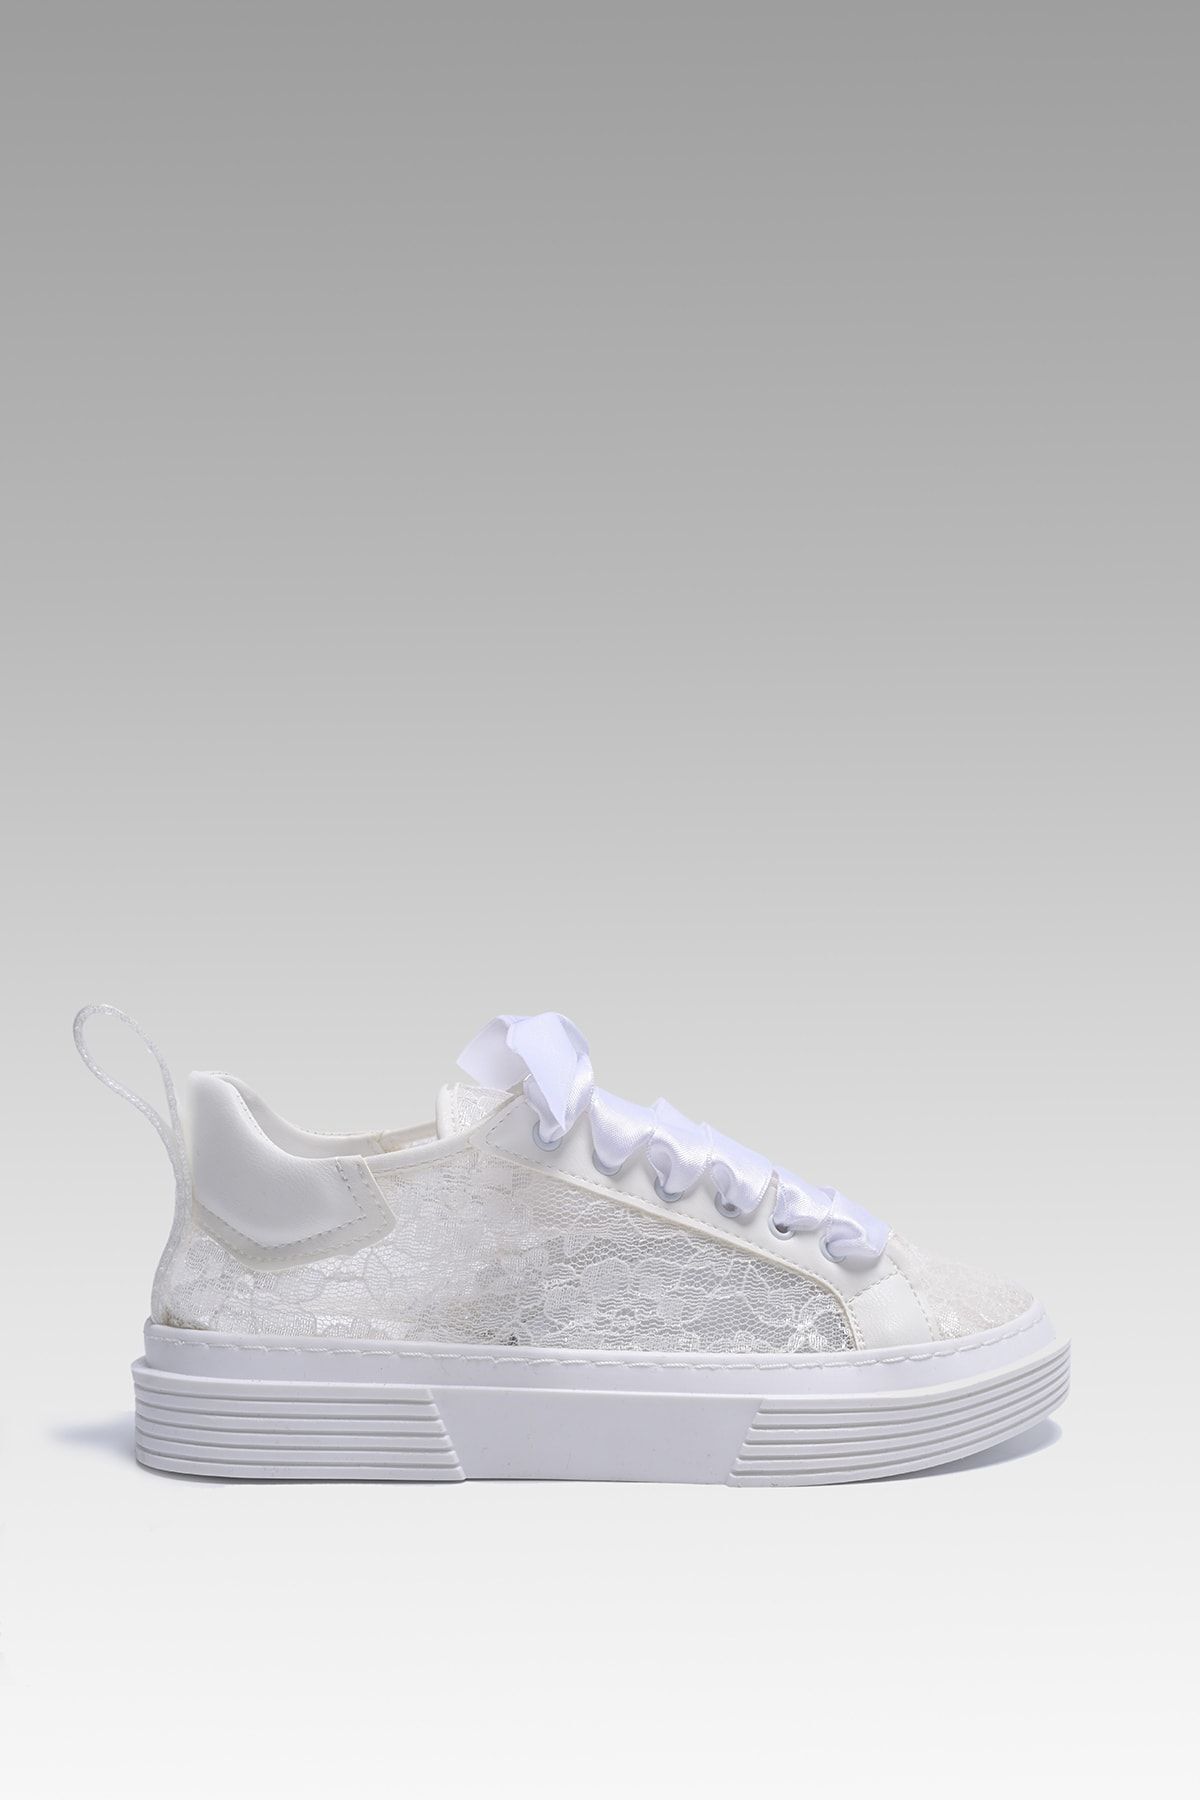 Beyond  Kadın Beyaz Dante Saten Bağcıklı Sneaker 4cm Bynddntl01